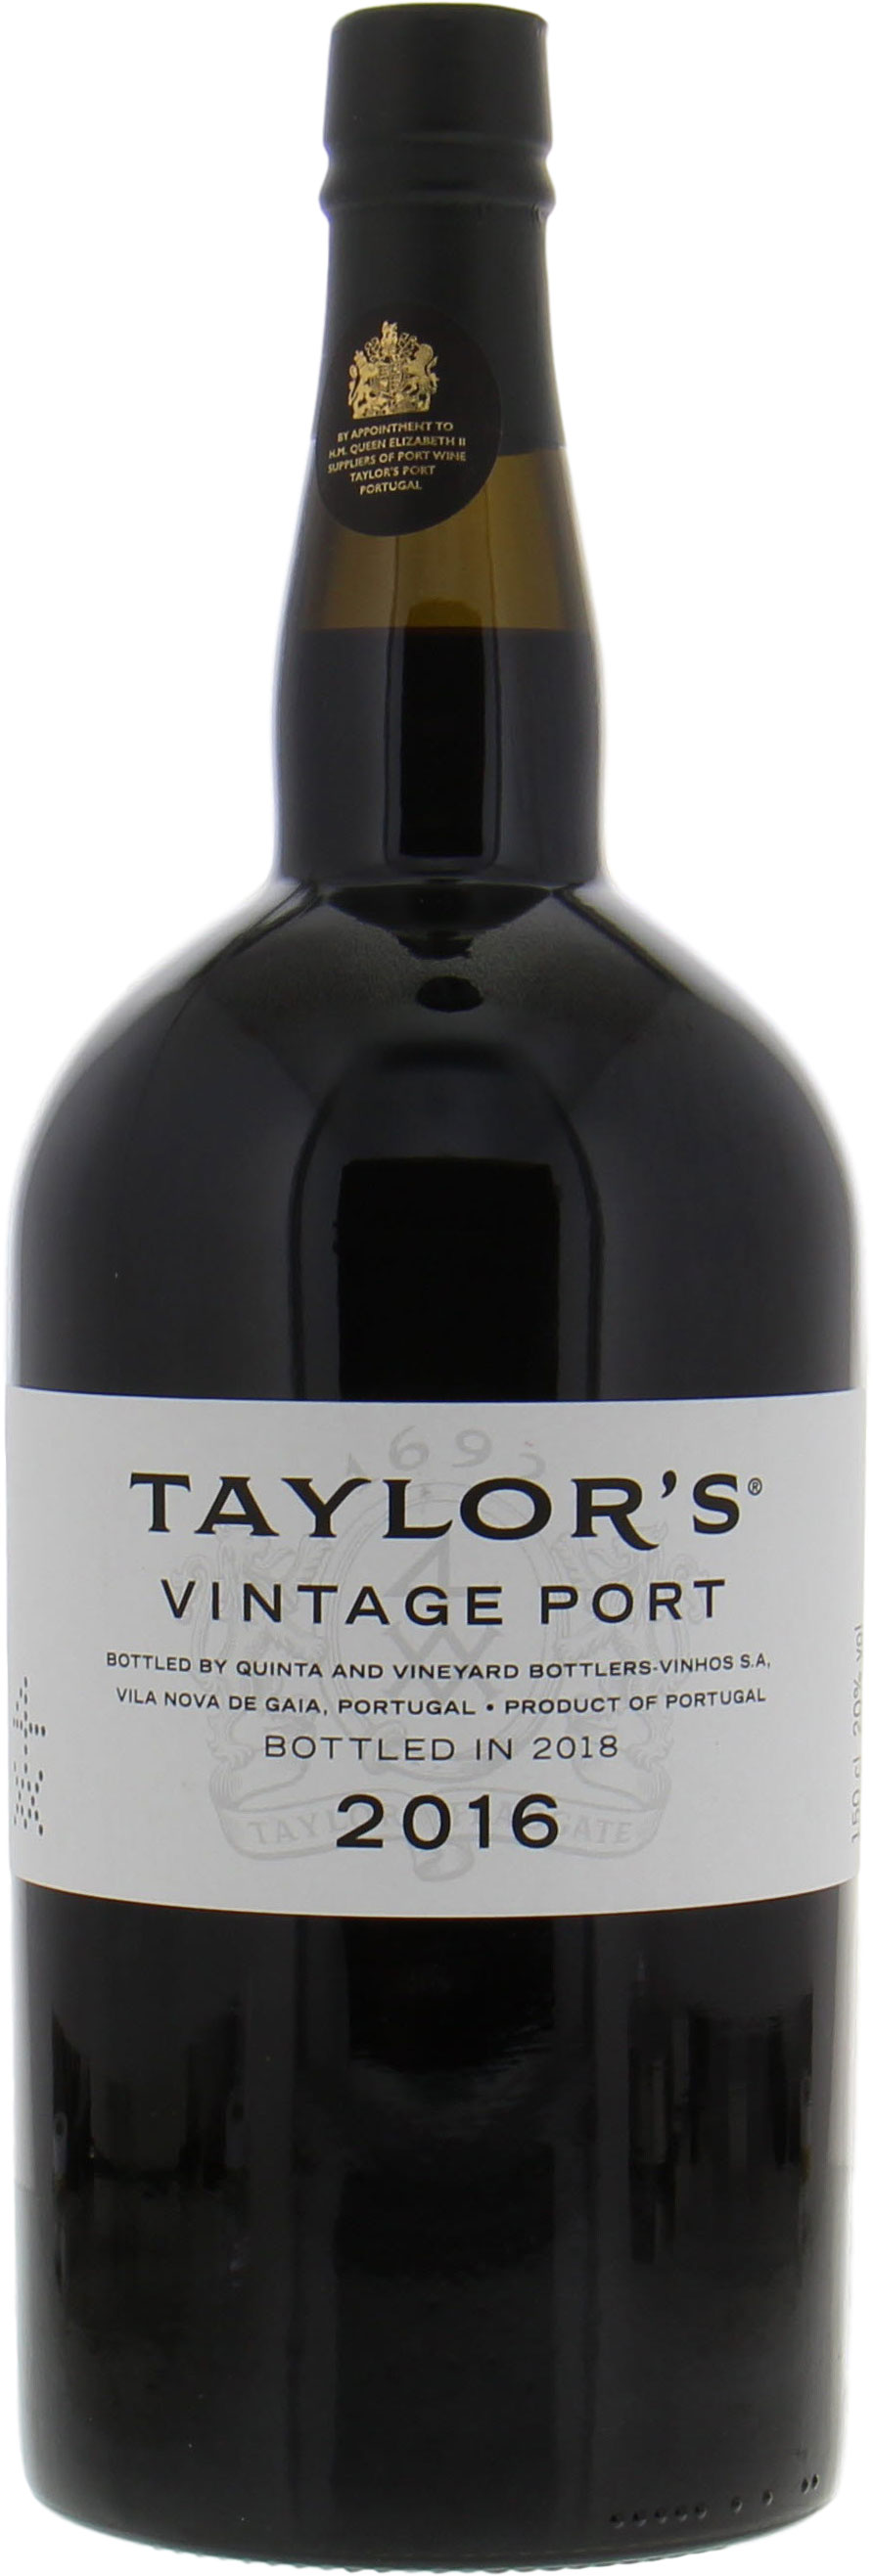 Taylor - Vintage Port 2016